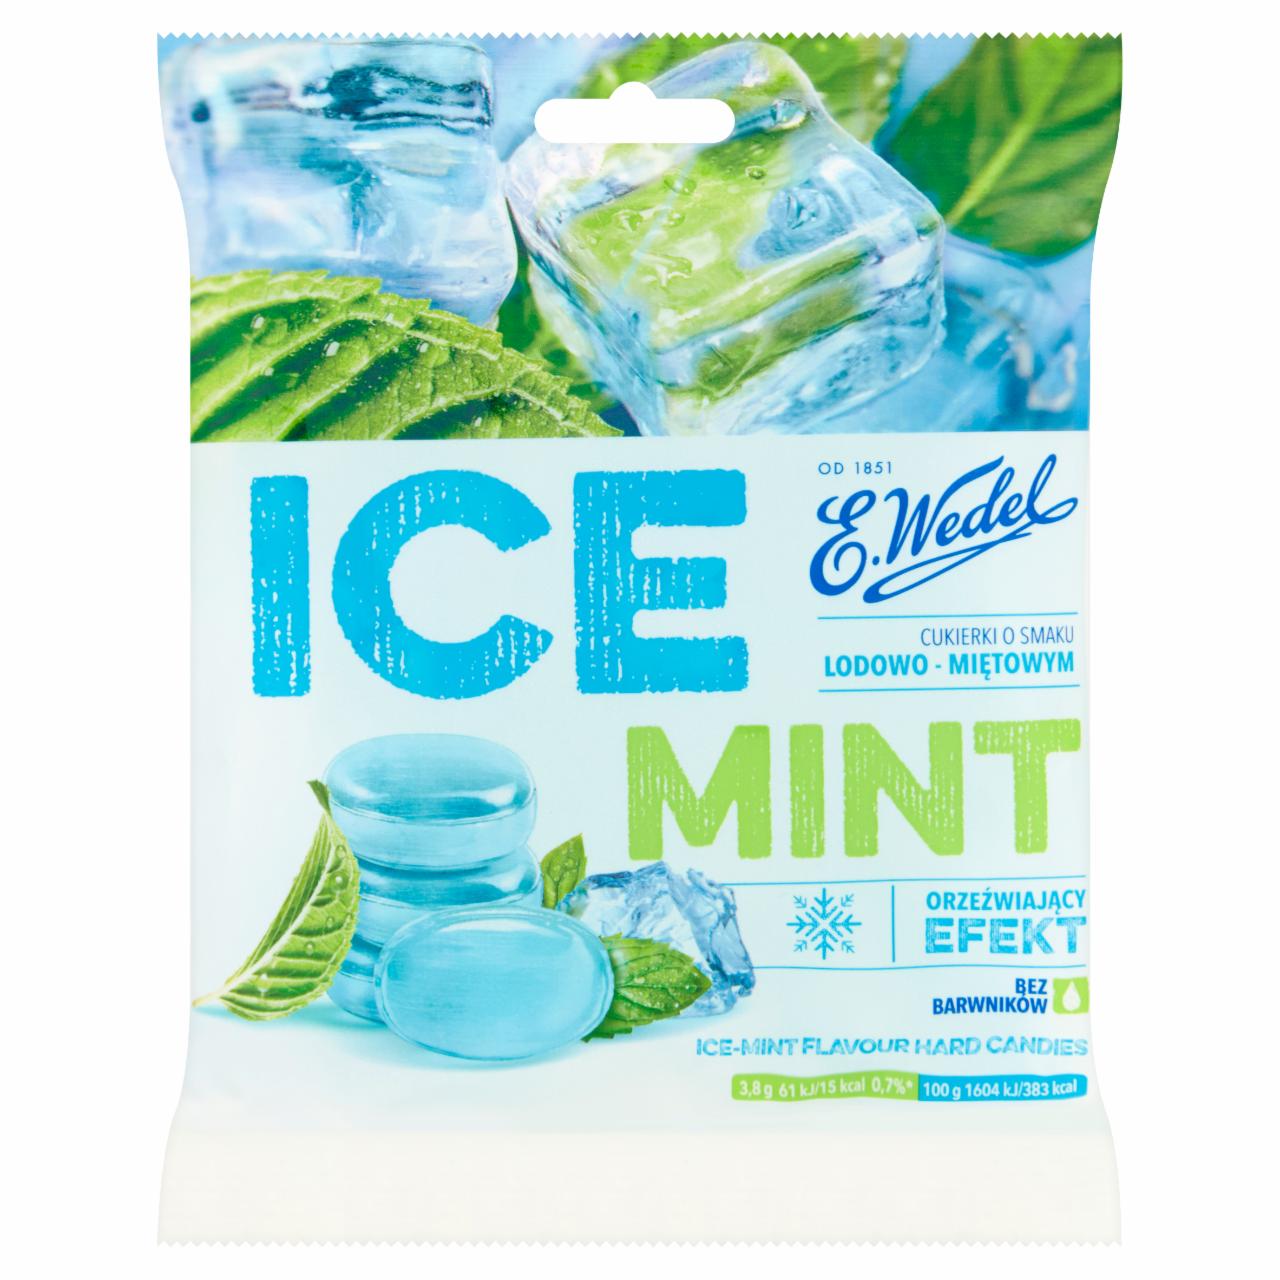 Zdjęcia - E. Wedel Ice Mint Cukierki o smaku lodowo-miętowym 90 g